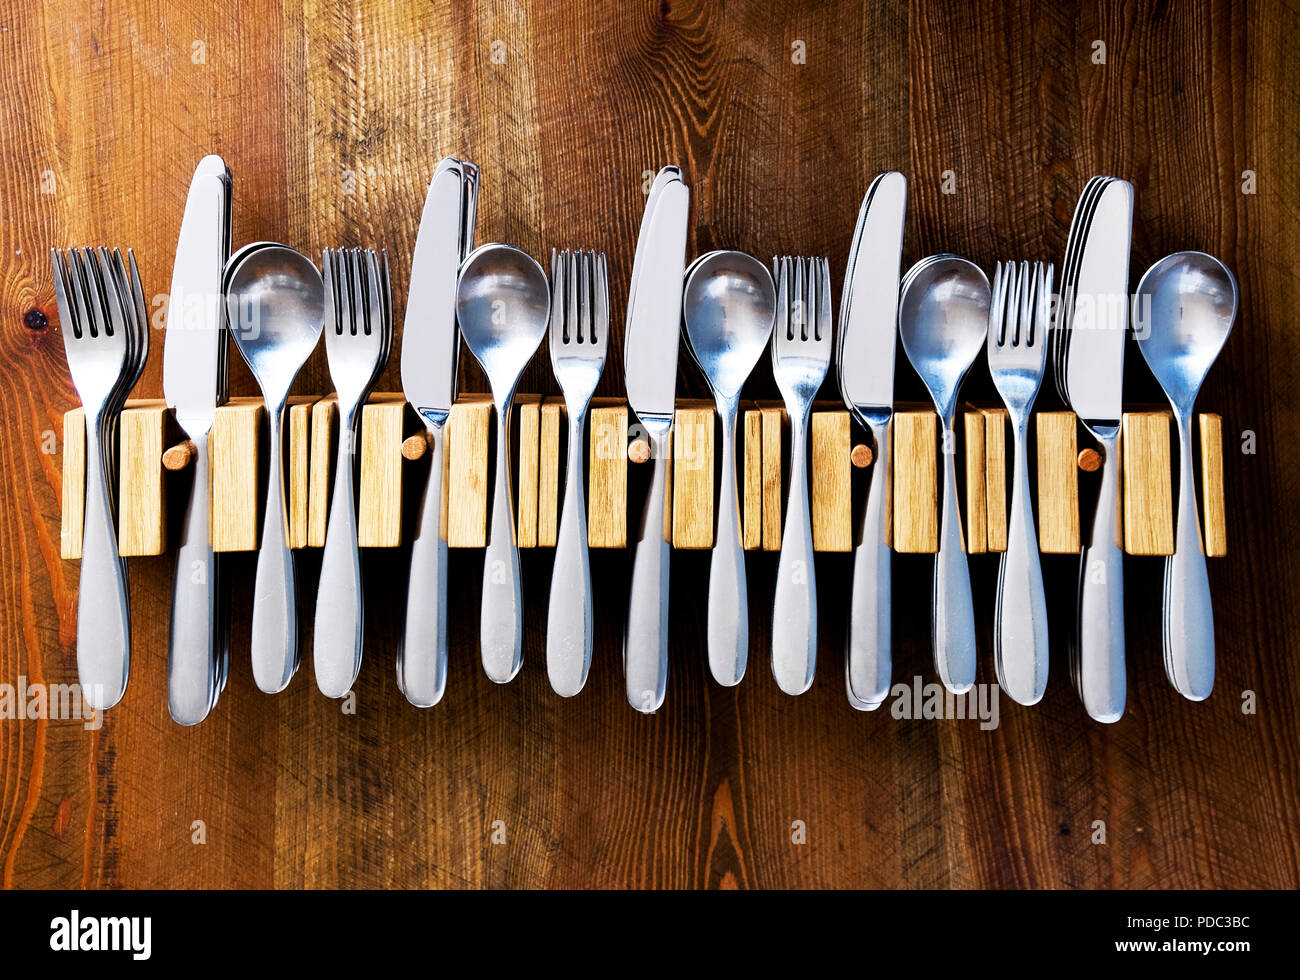 Un montón de cuchillos y tenedores cucharas apostados en una línea de cinco tenedores cubiertos de madera sobre una mesa de madera, fotografía en color Foto de stock